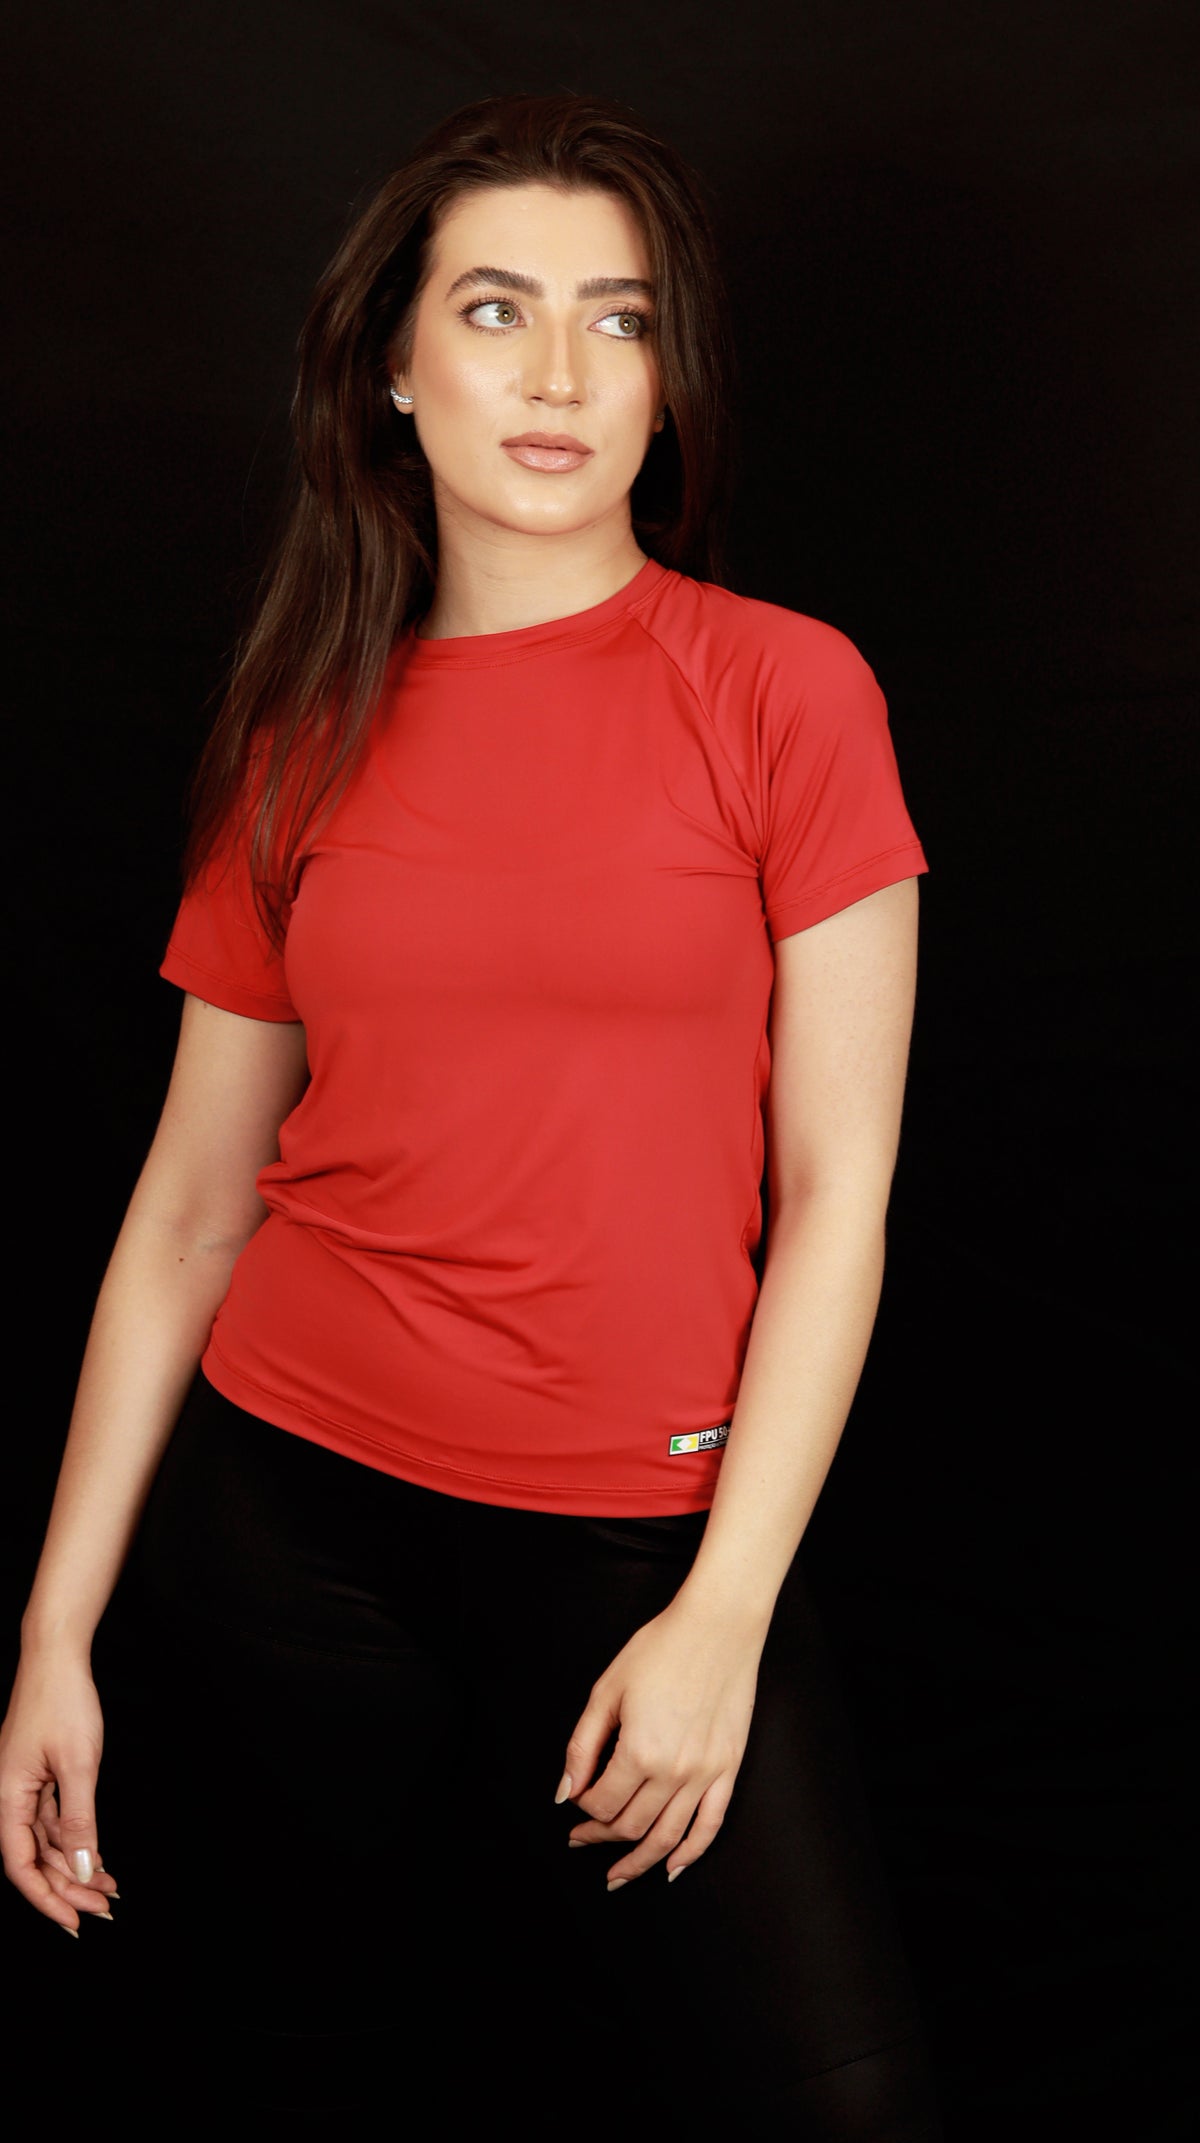 Camiseta Feminina  UV+ Vermelha - Manga Curta